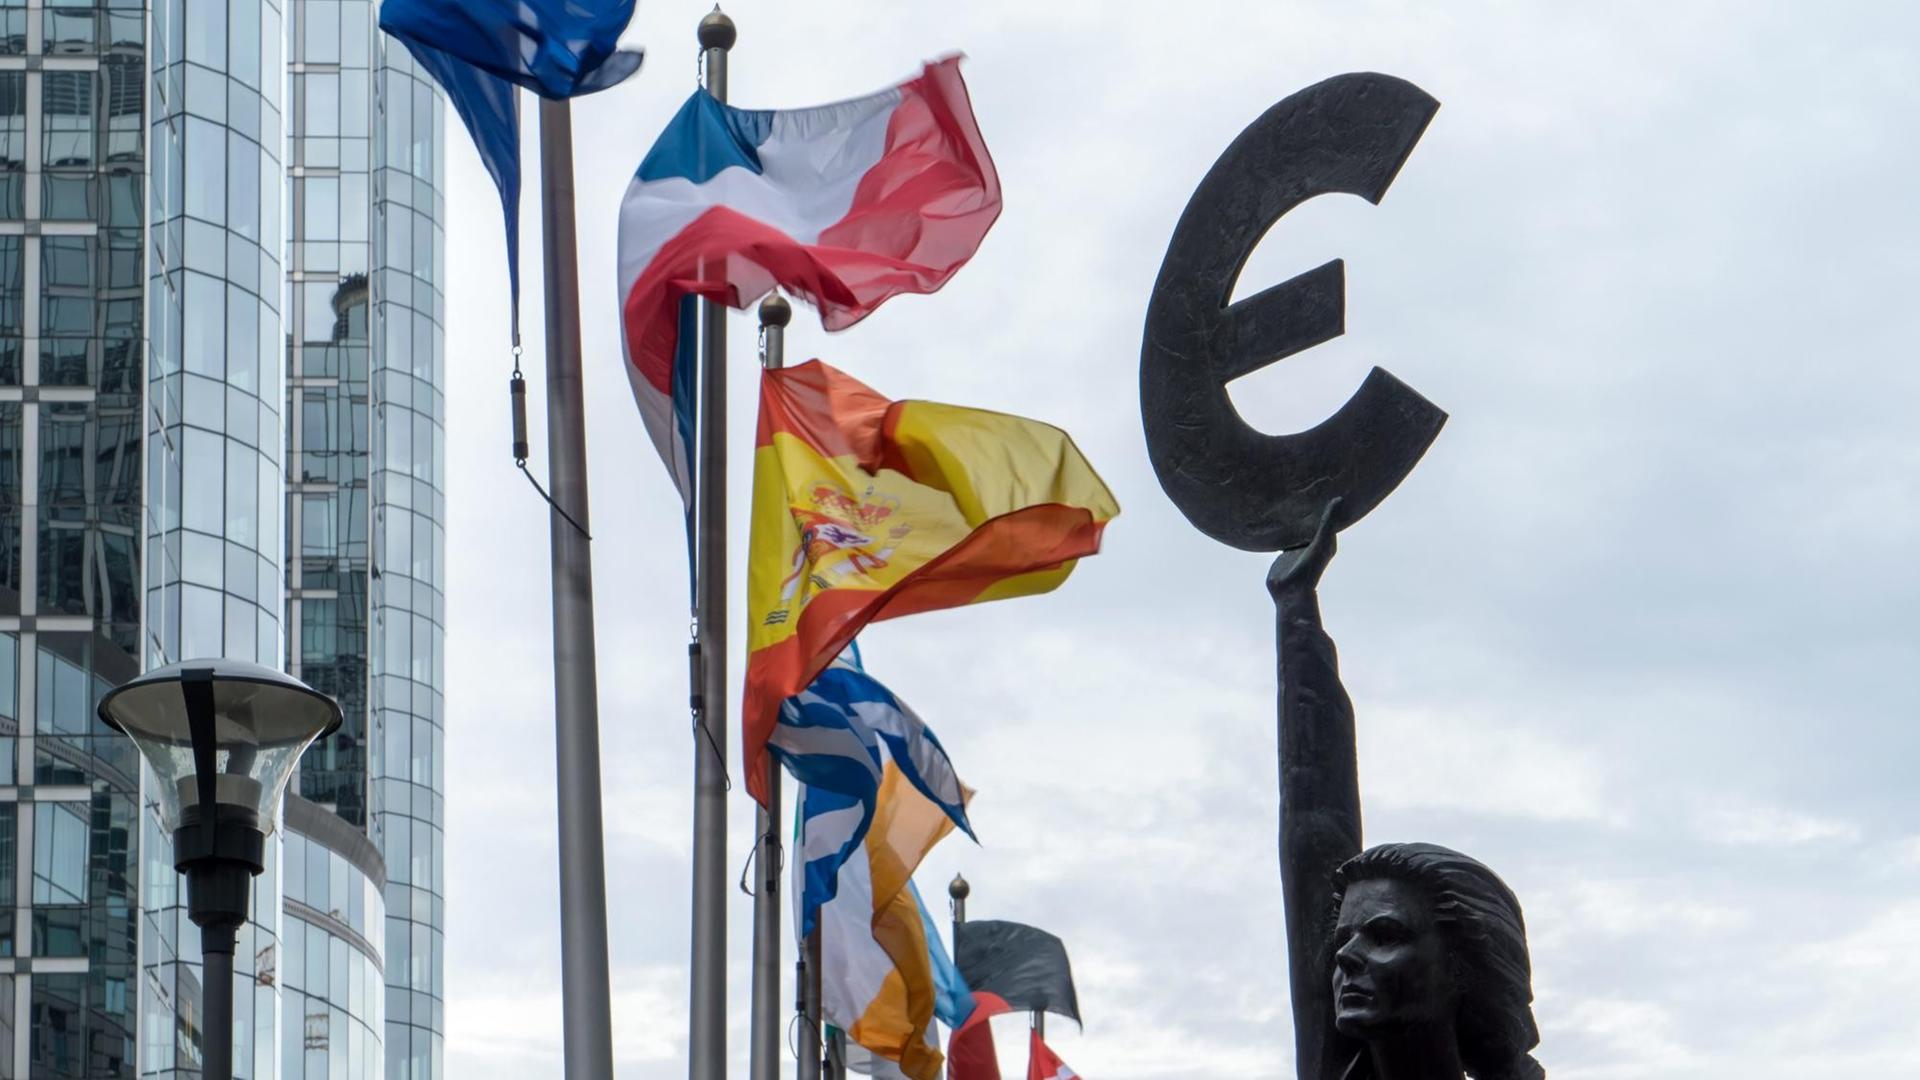 Statue "Europa" der belgischen Künstlerin May Claerhout vor dem Europäischen Parlament in Brüssel.